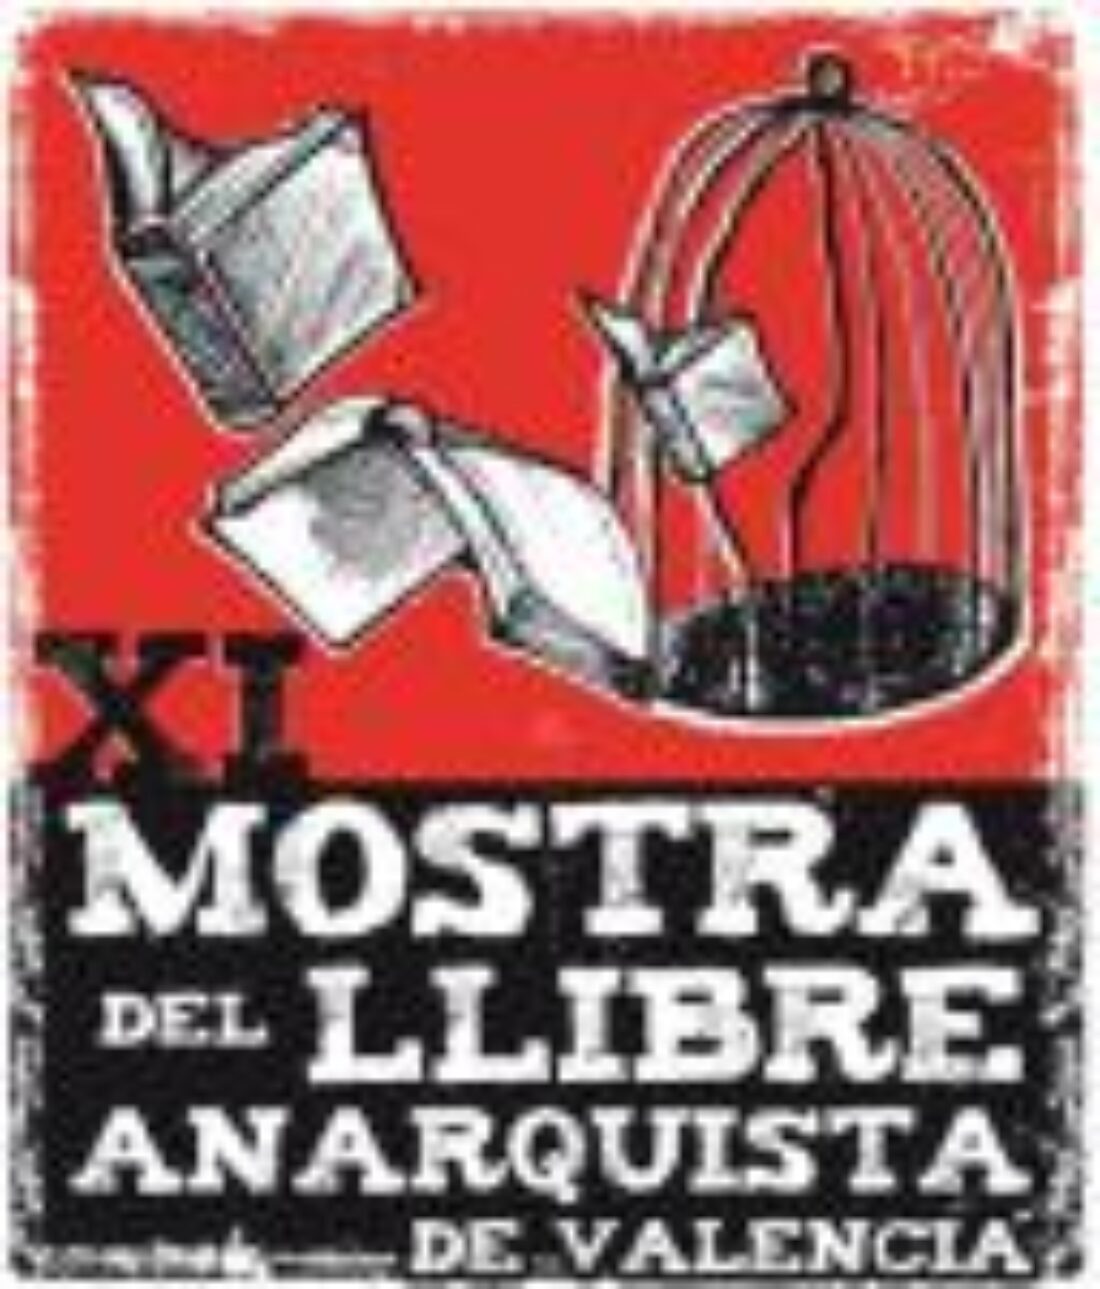 XI Mostra del Llibre Anarquista de València en el barrio de El Carmen